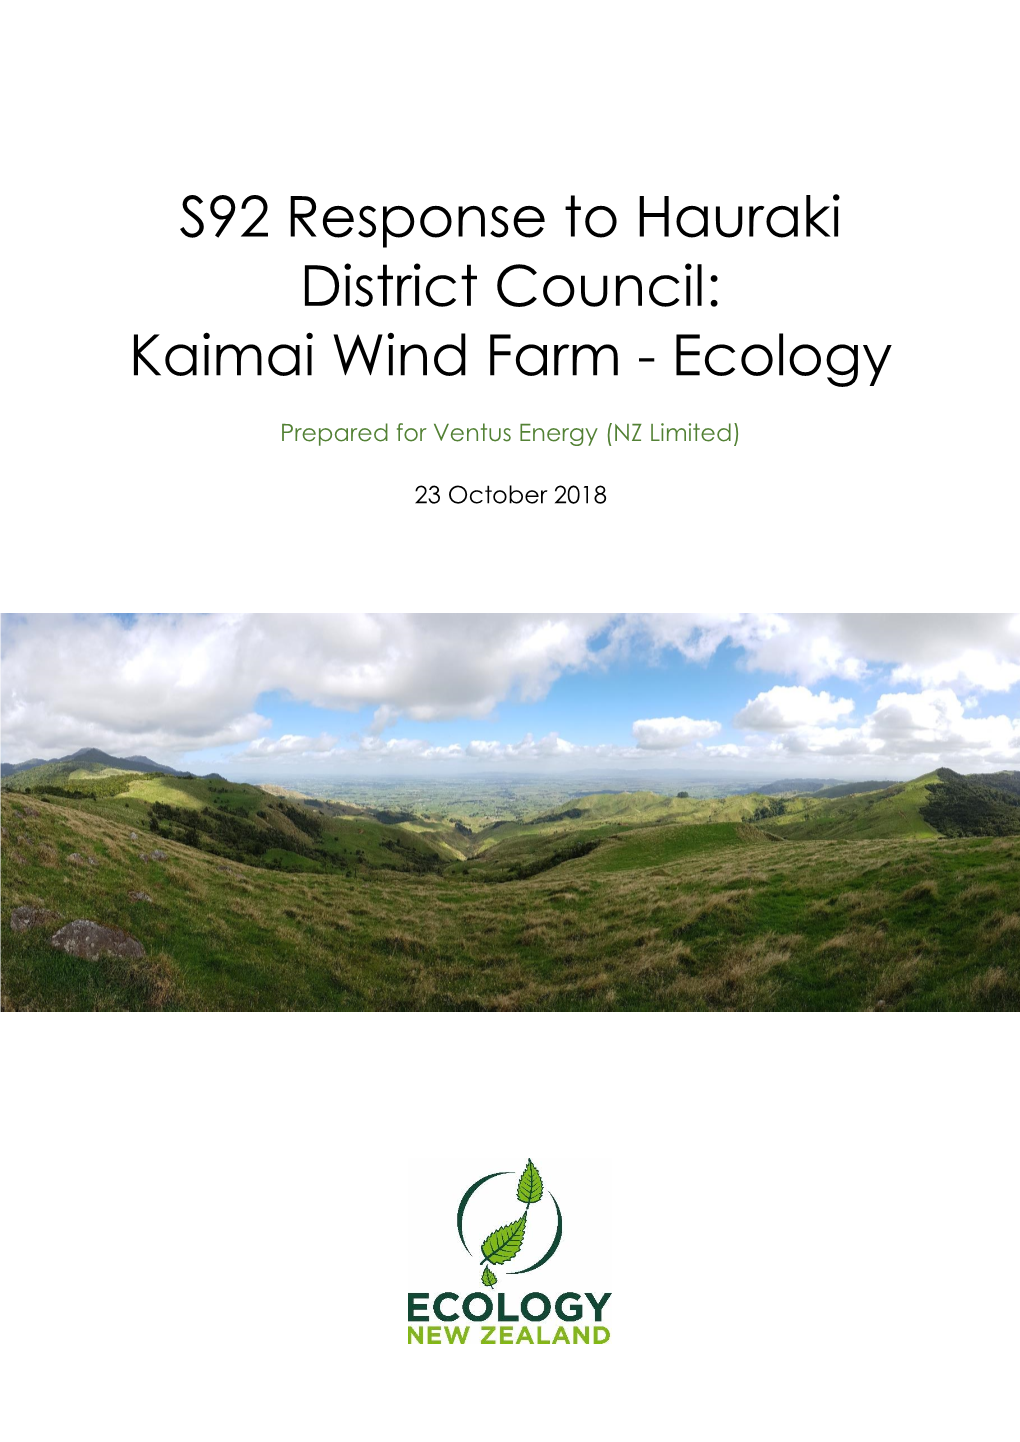 S92 Response to Hauraki District Council: Kaimai Wind Farm